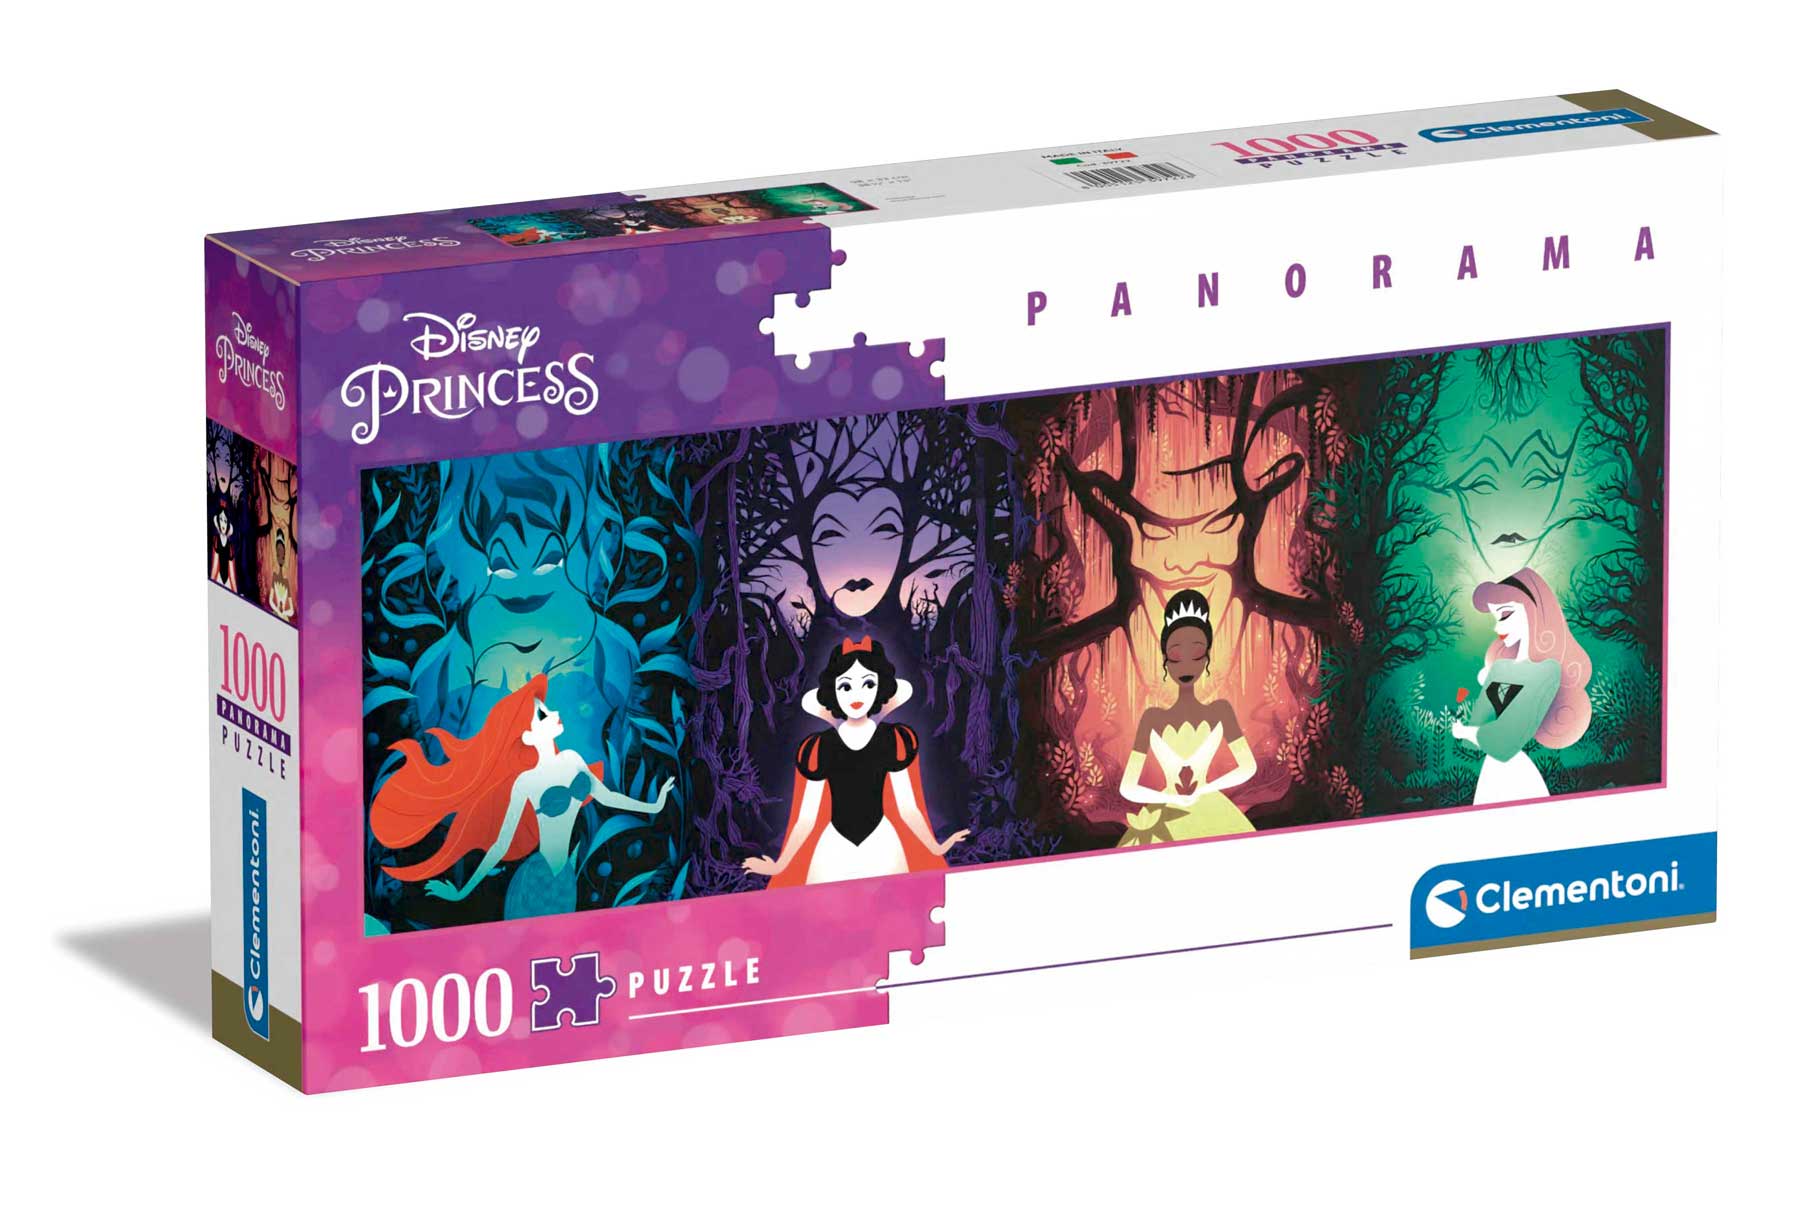 Comprar Puzzle Clementoni Panorama Princesas Disney de 1000 Pzs -  Clementoni-39722